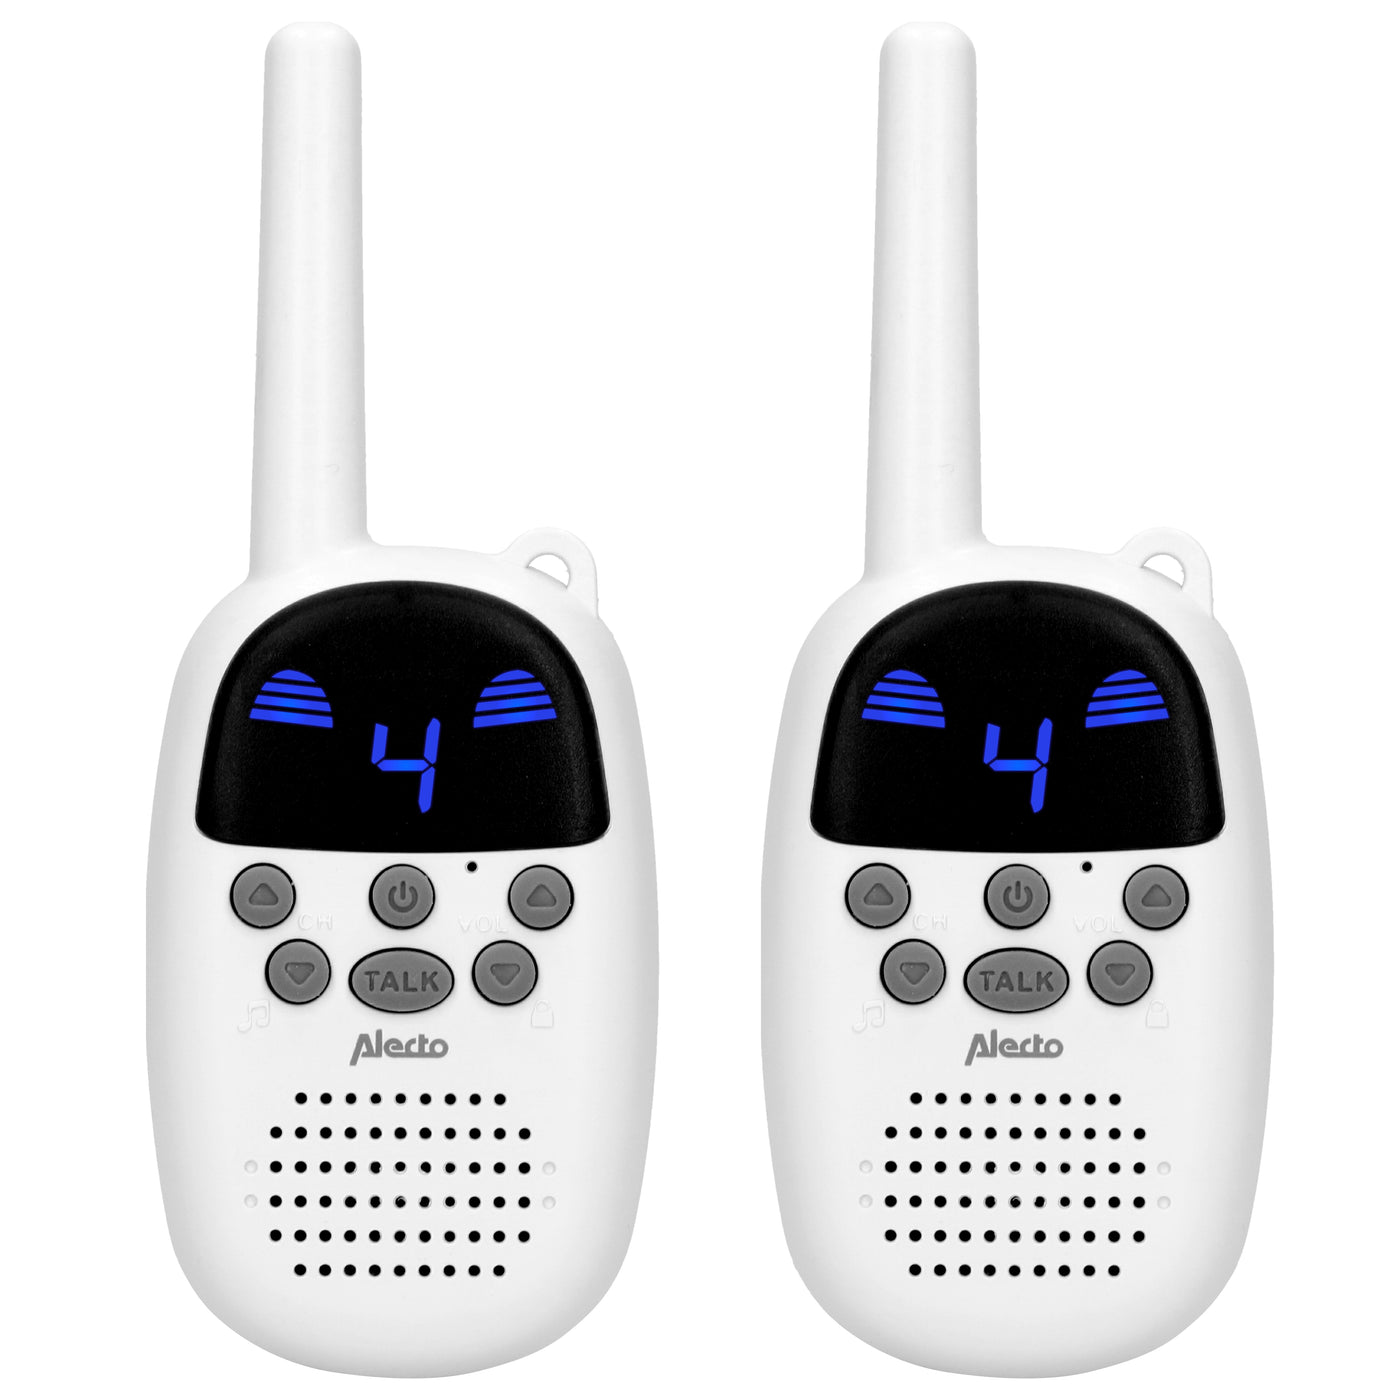 Alecto FR-09 - Set van twee walkie talkies voor kinderen -  3 km bereik, wit